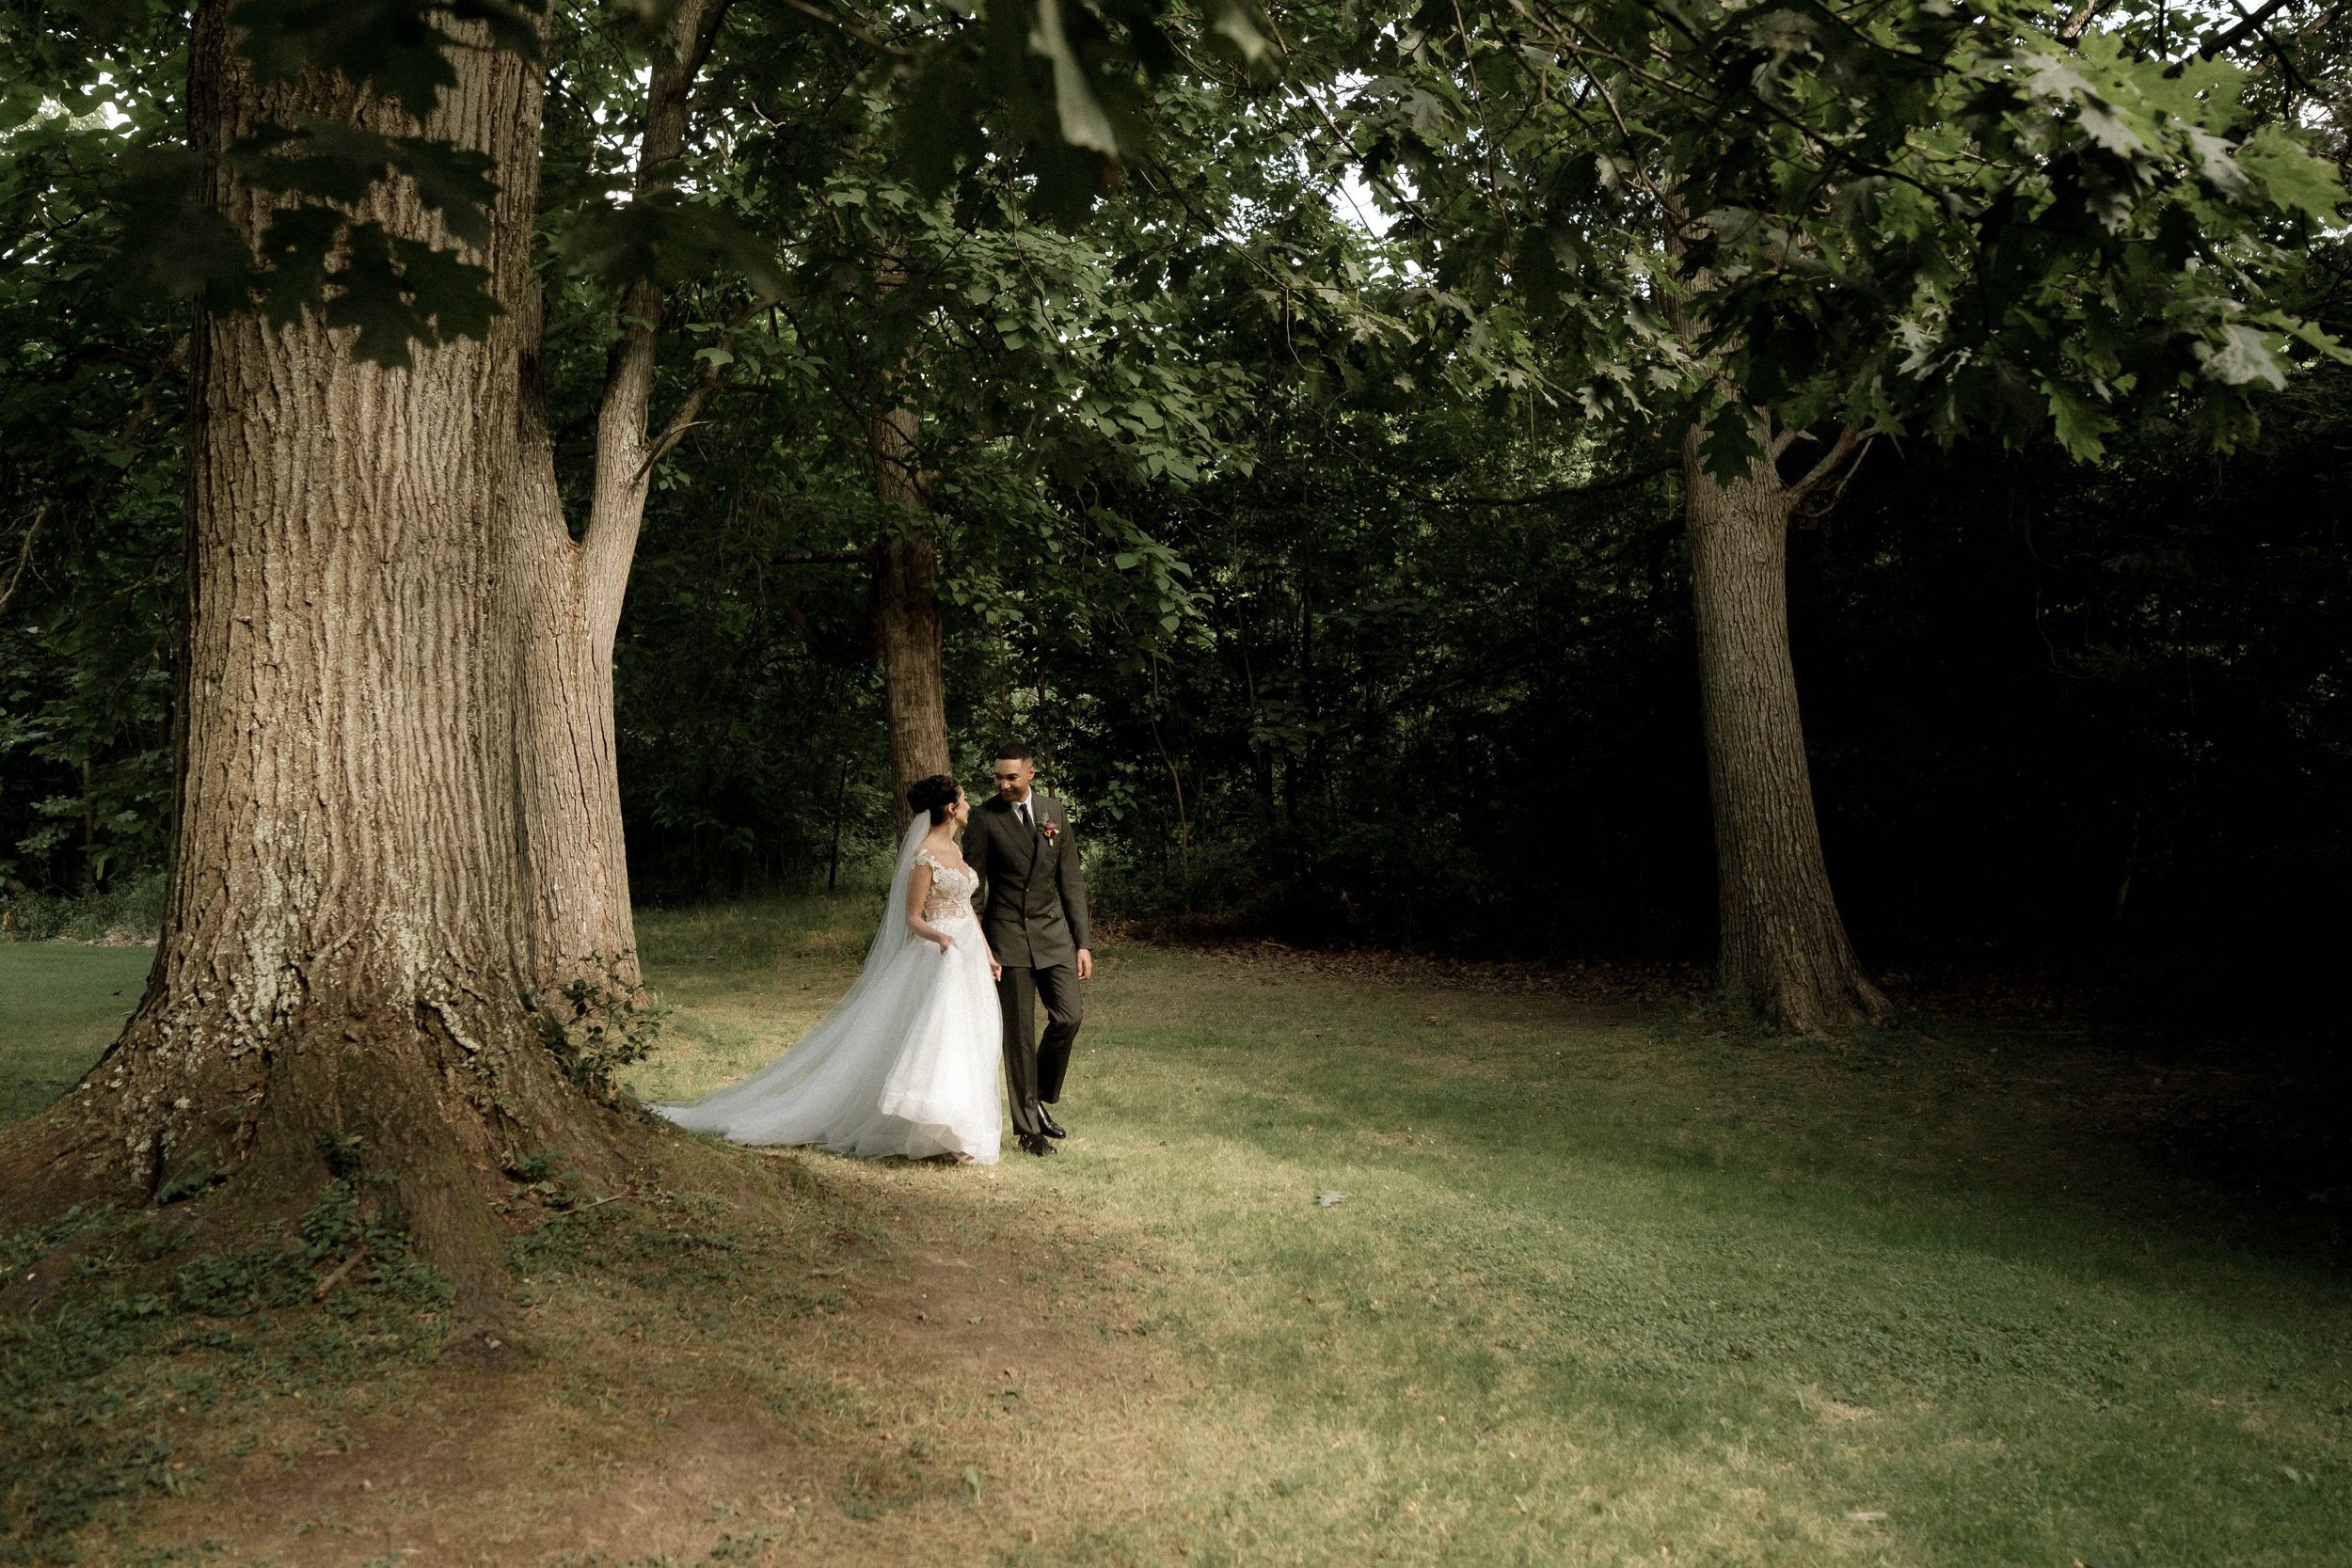  outdoor wedding bride and groom photos 